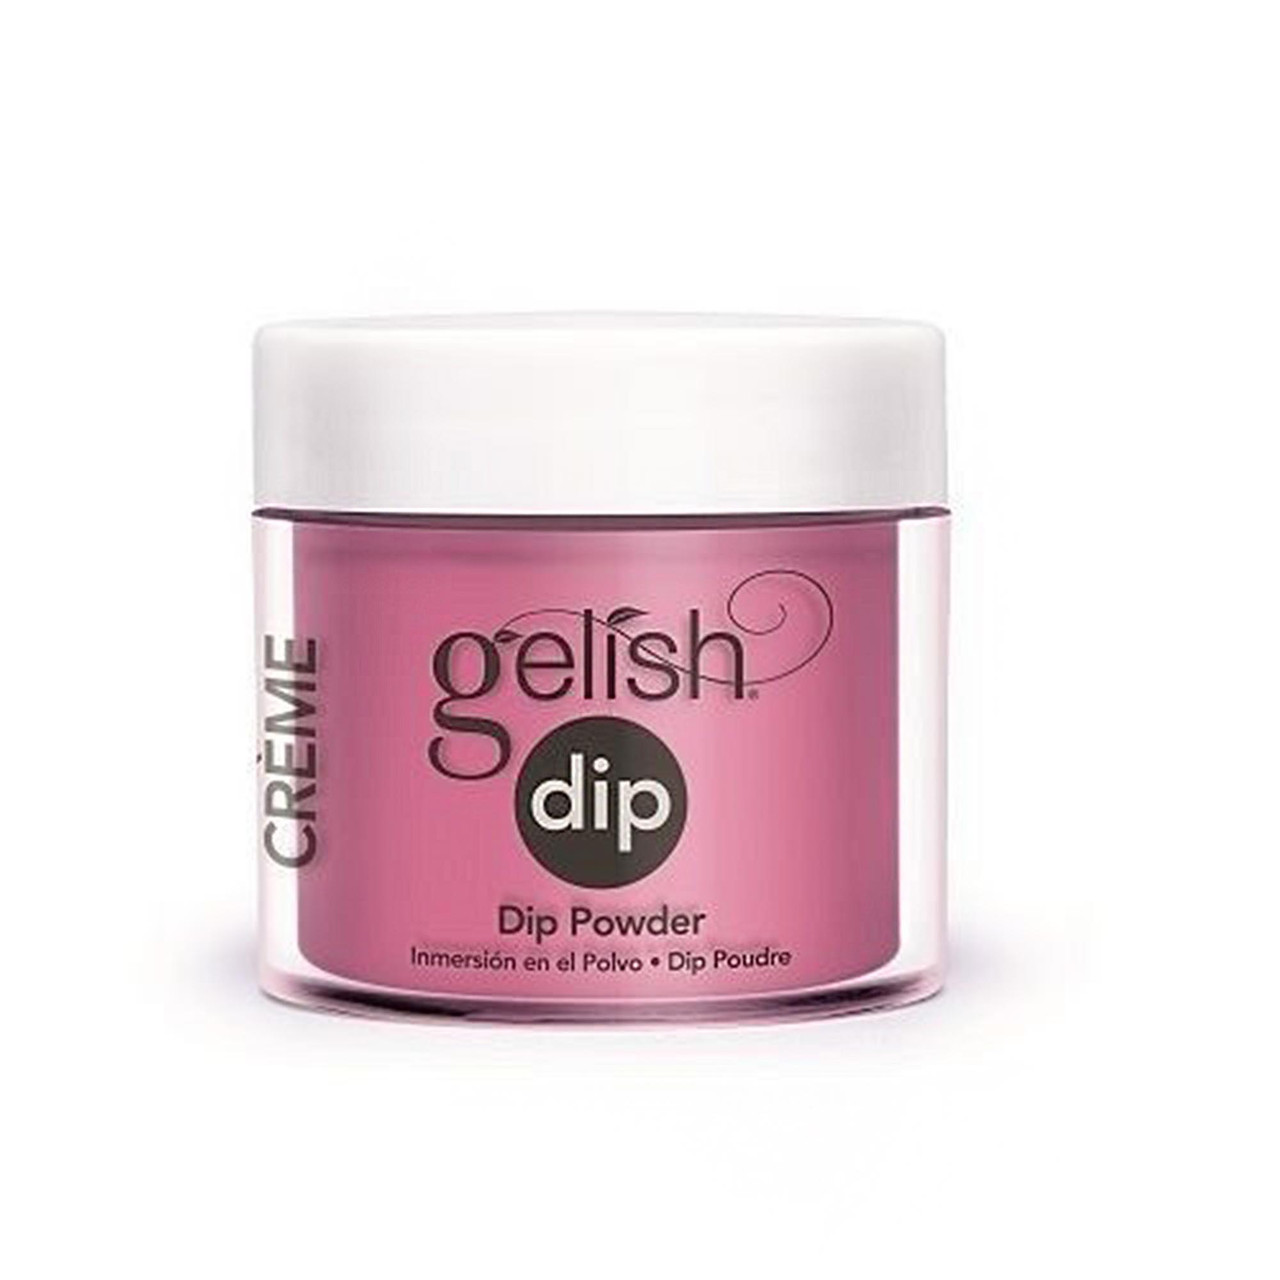 Gelish Dip Powder - 1610128 - Tropical Punch